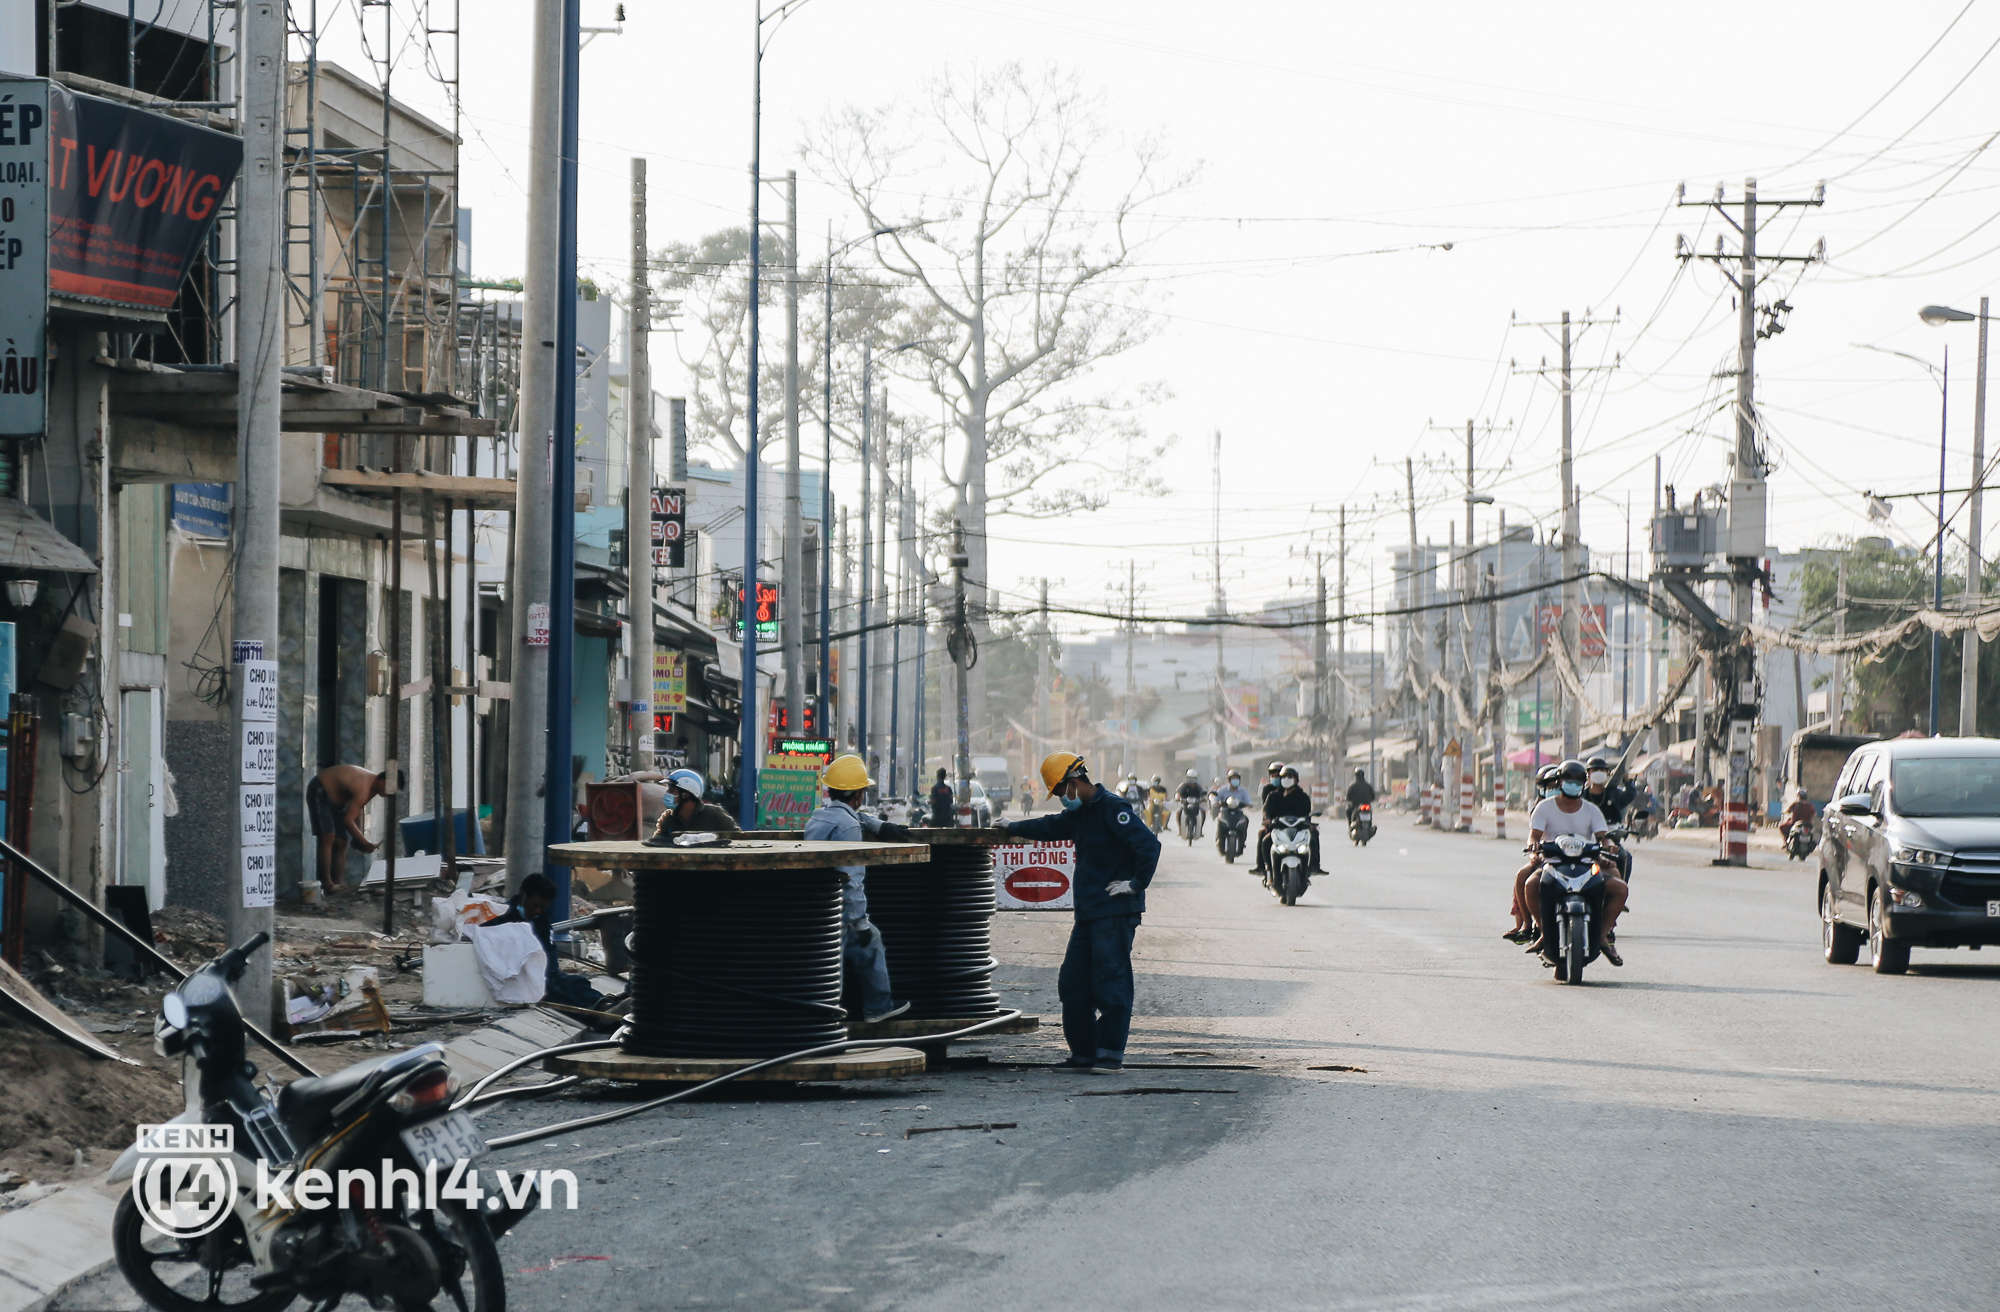 Hàng trăm cột điện bị bỏ quên giữa đường ở Sài Gòn, người dân nín thở luồn lách - Ảnh 17.